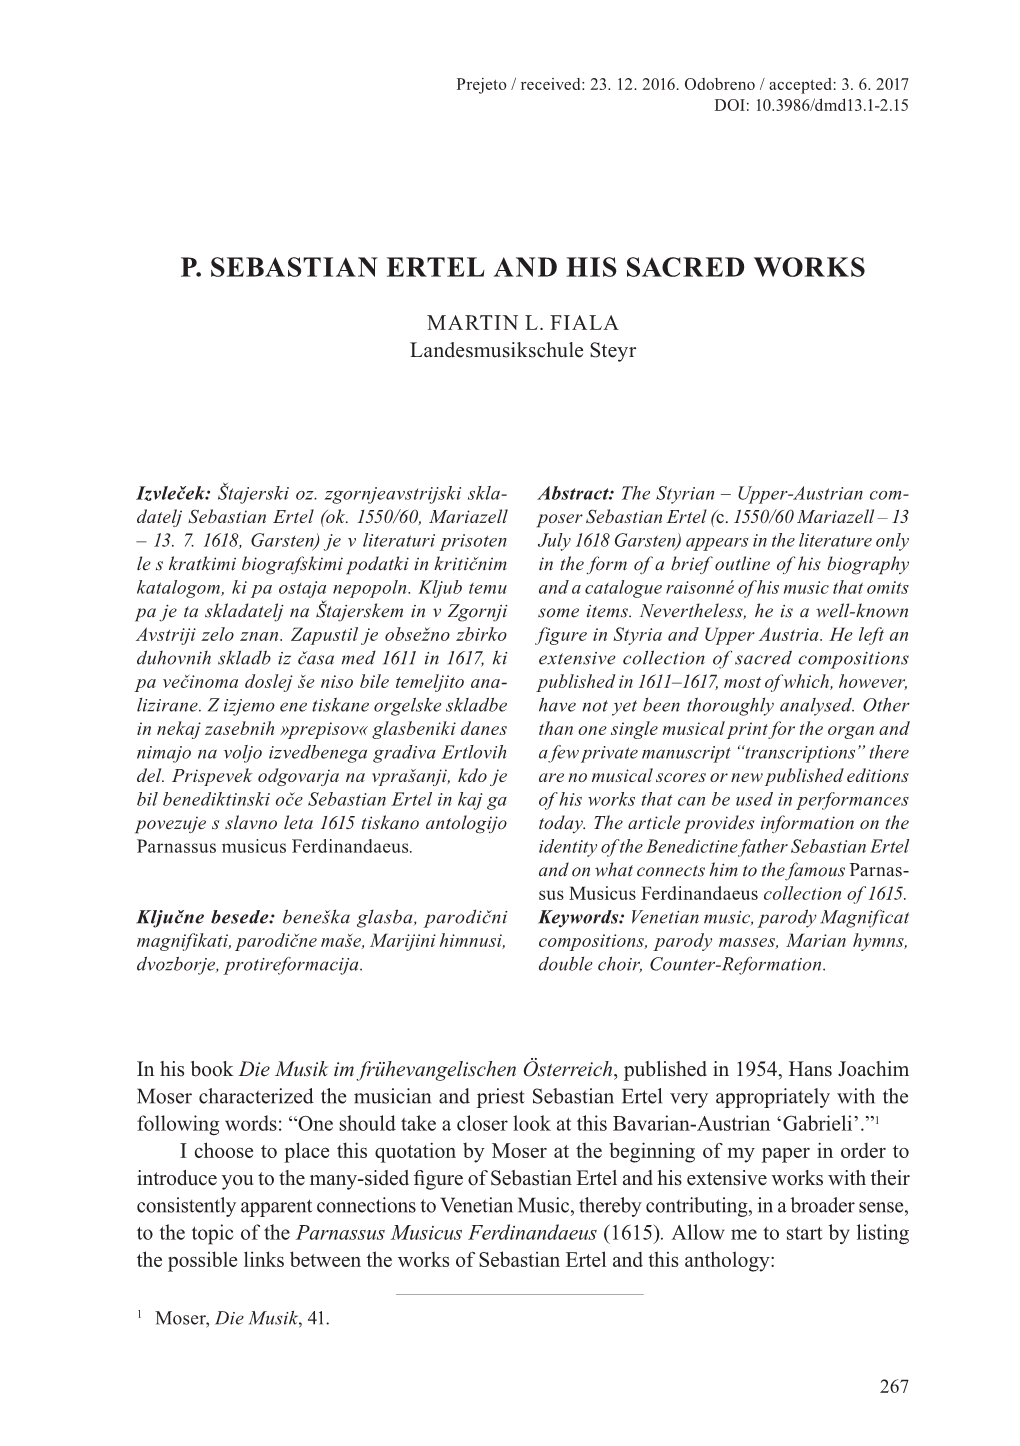 P. Sebastian Ertel and His Sacred Works